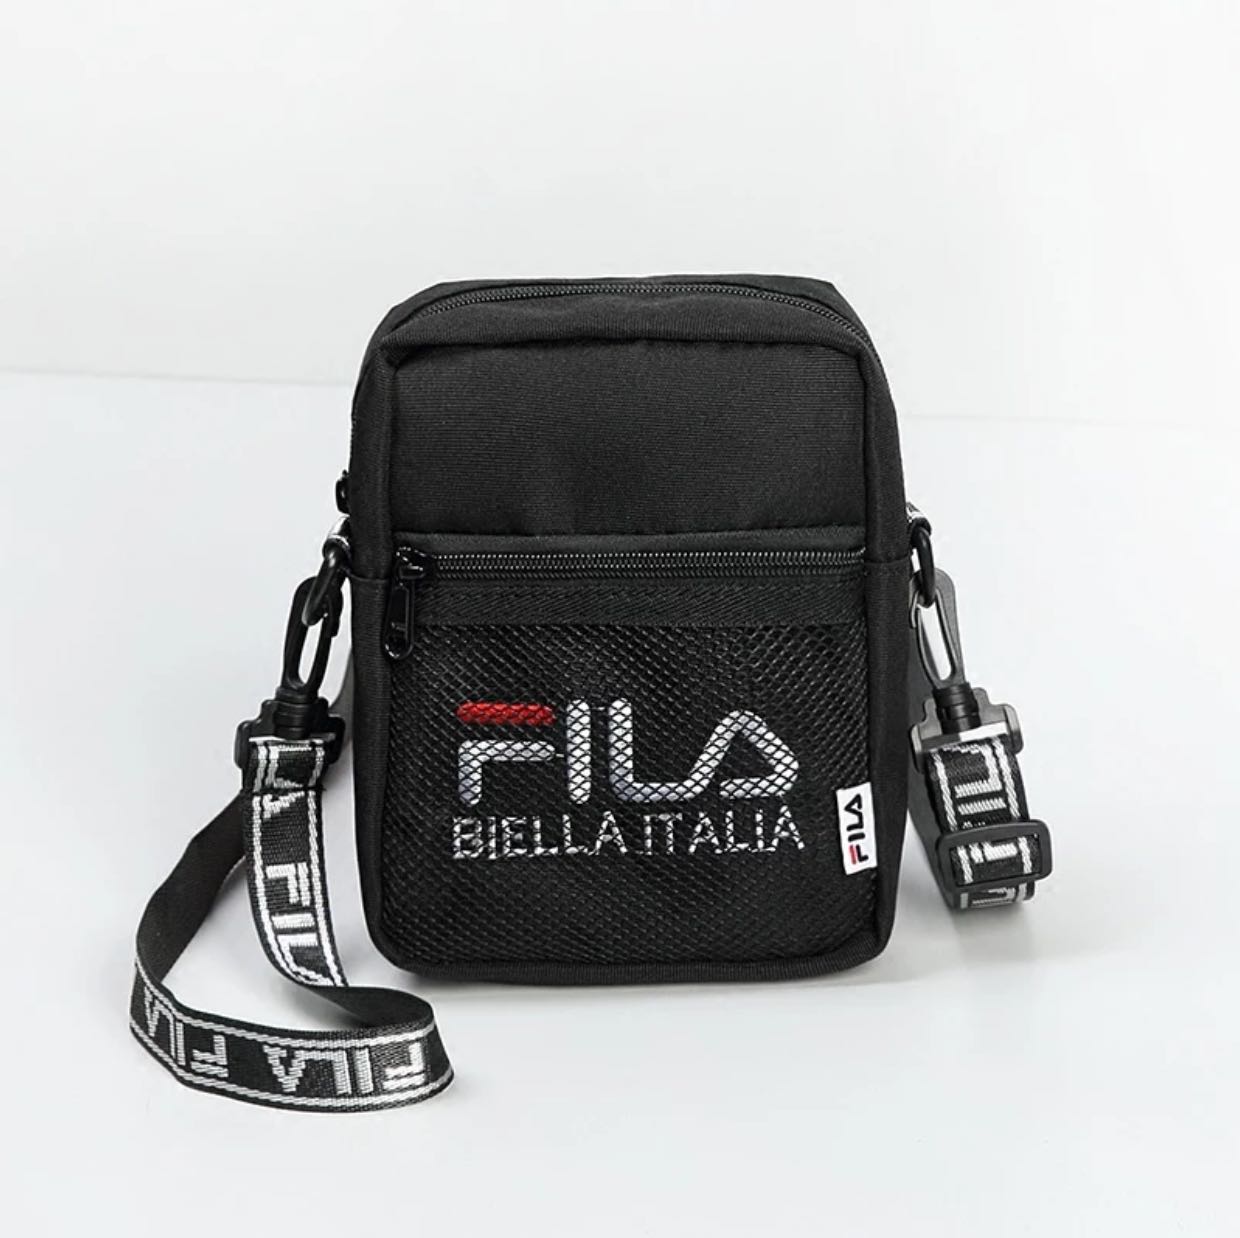 fila small sling bag